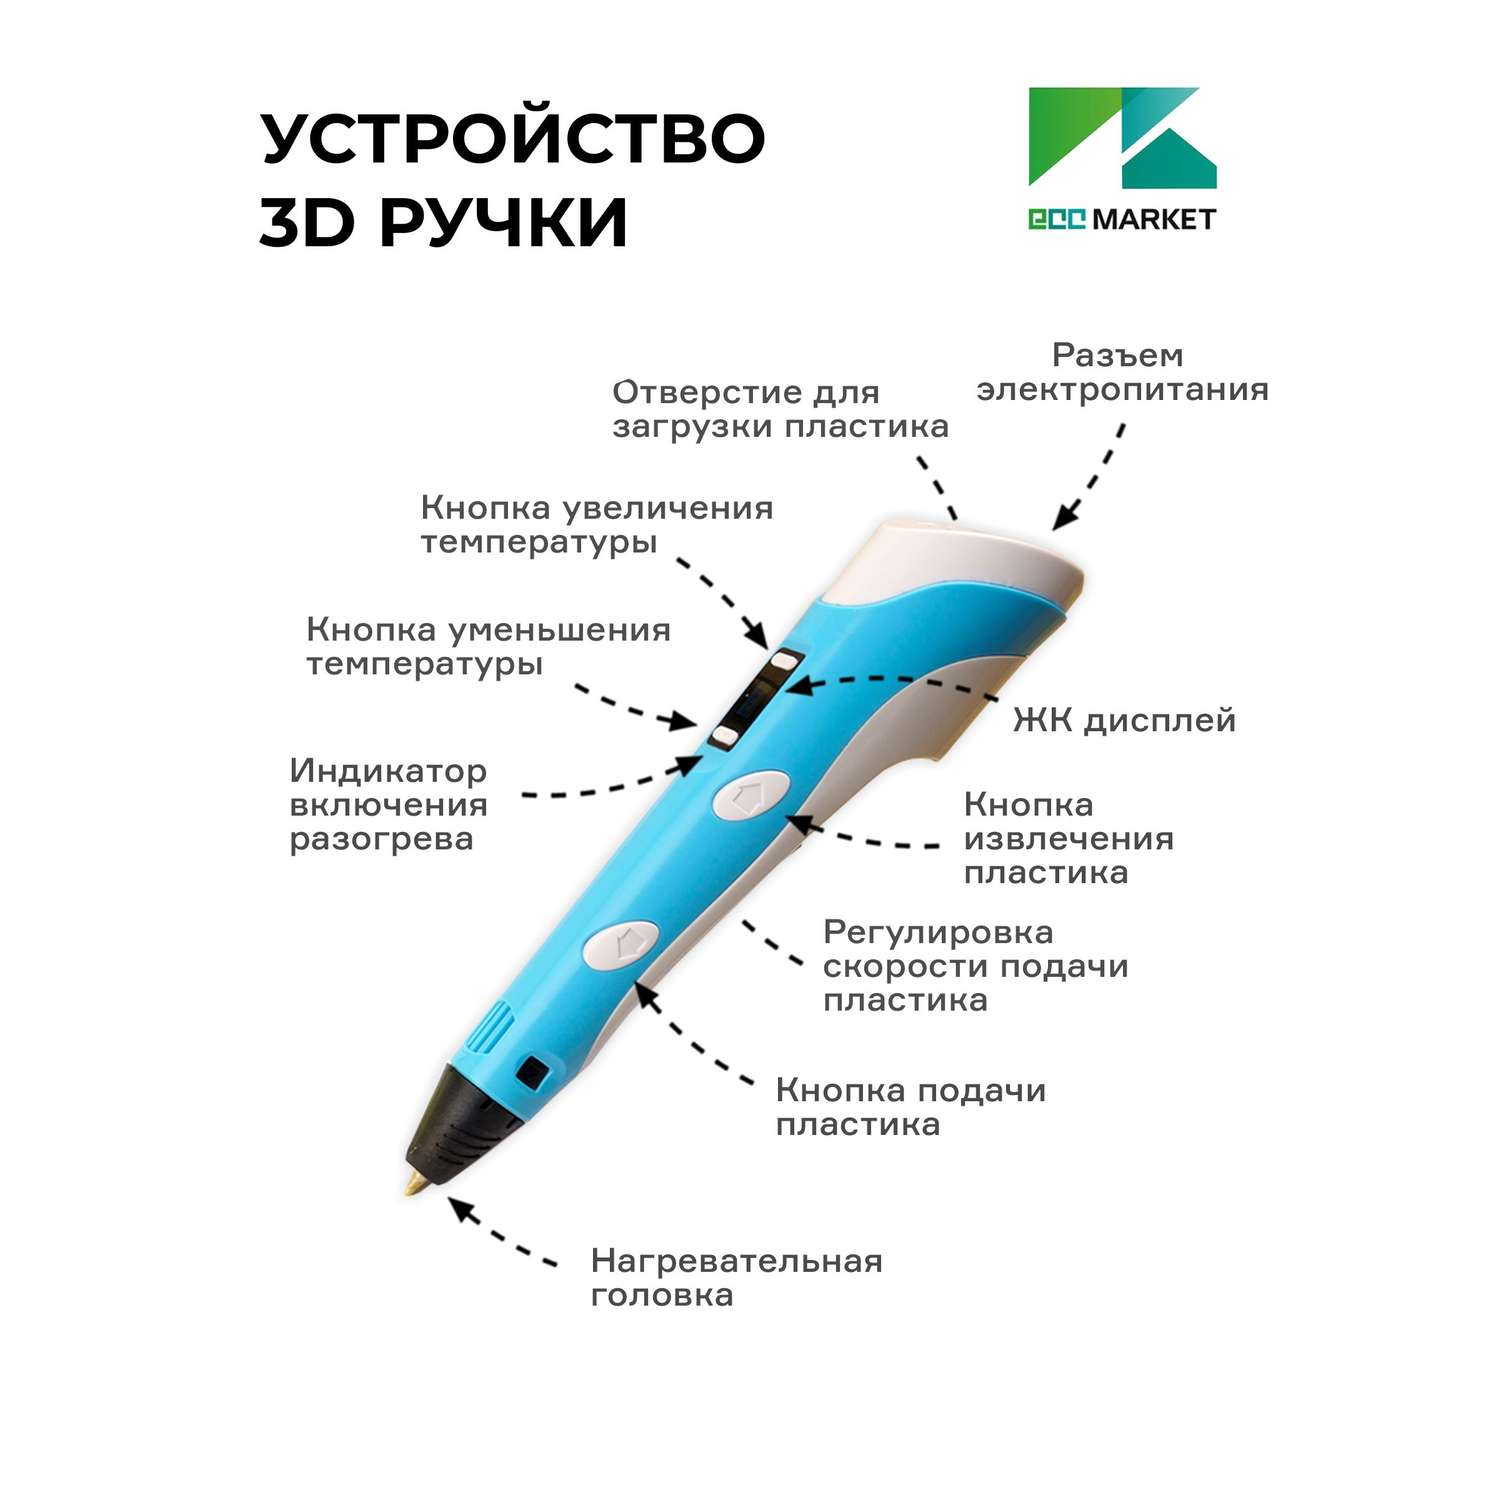 3D ручка ECC Market 3DPEN 2 7 голубая - фото 4